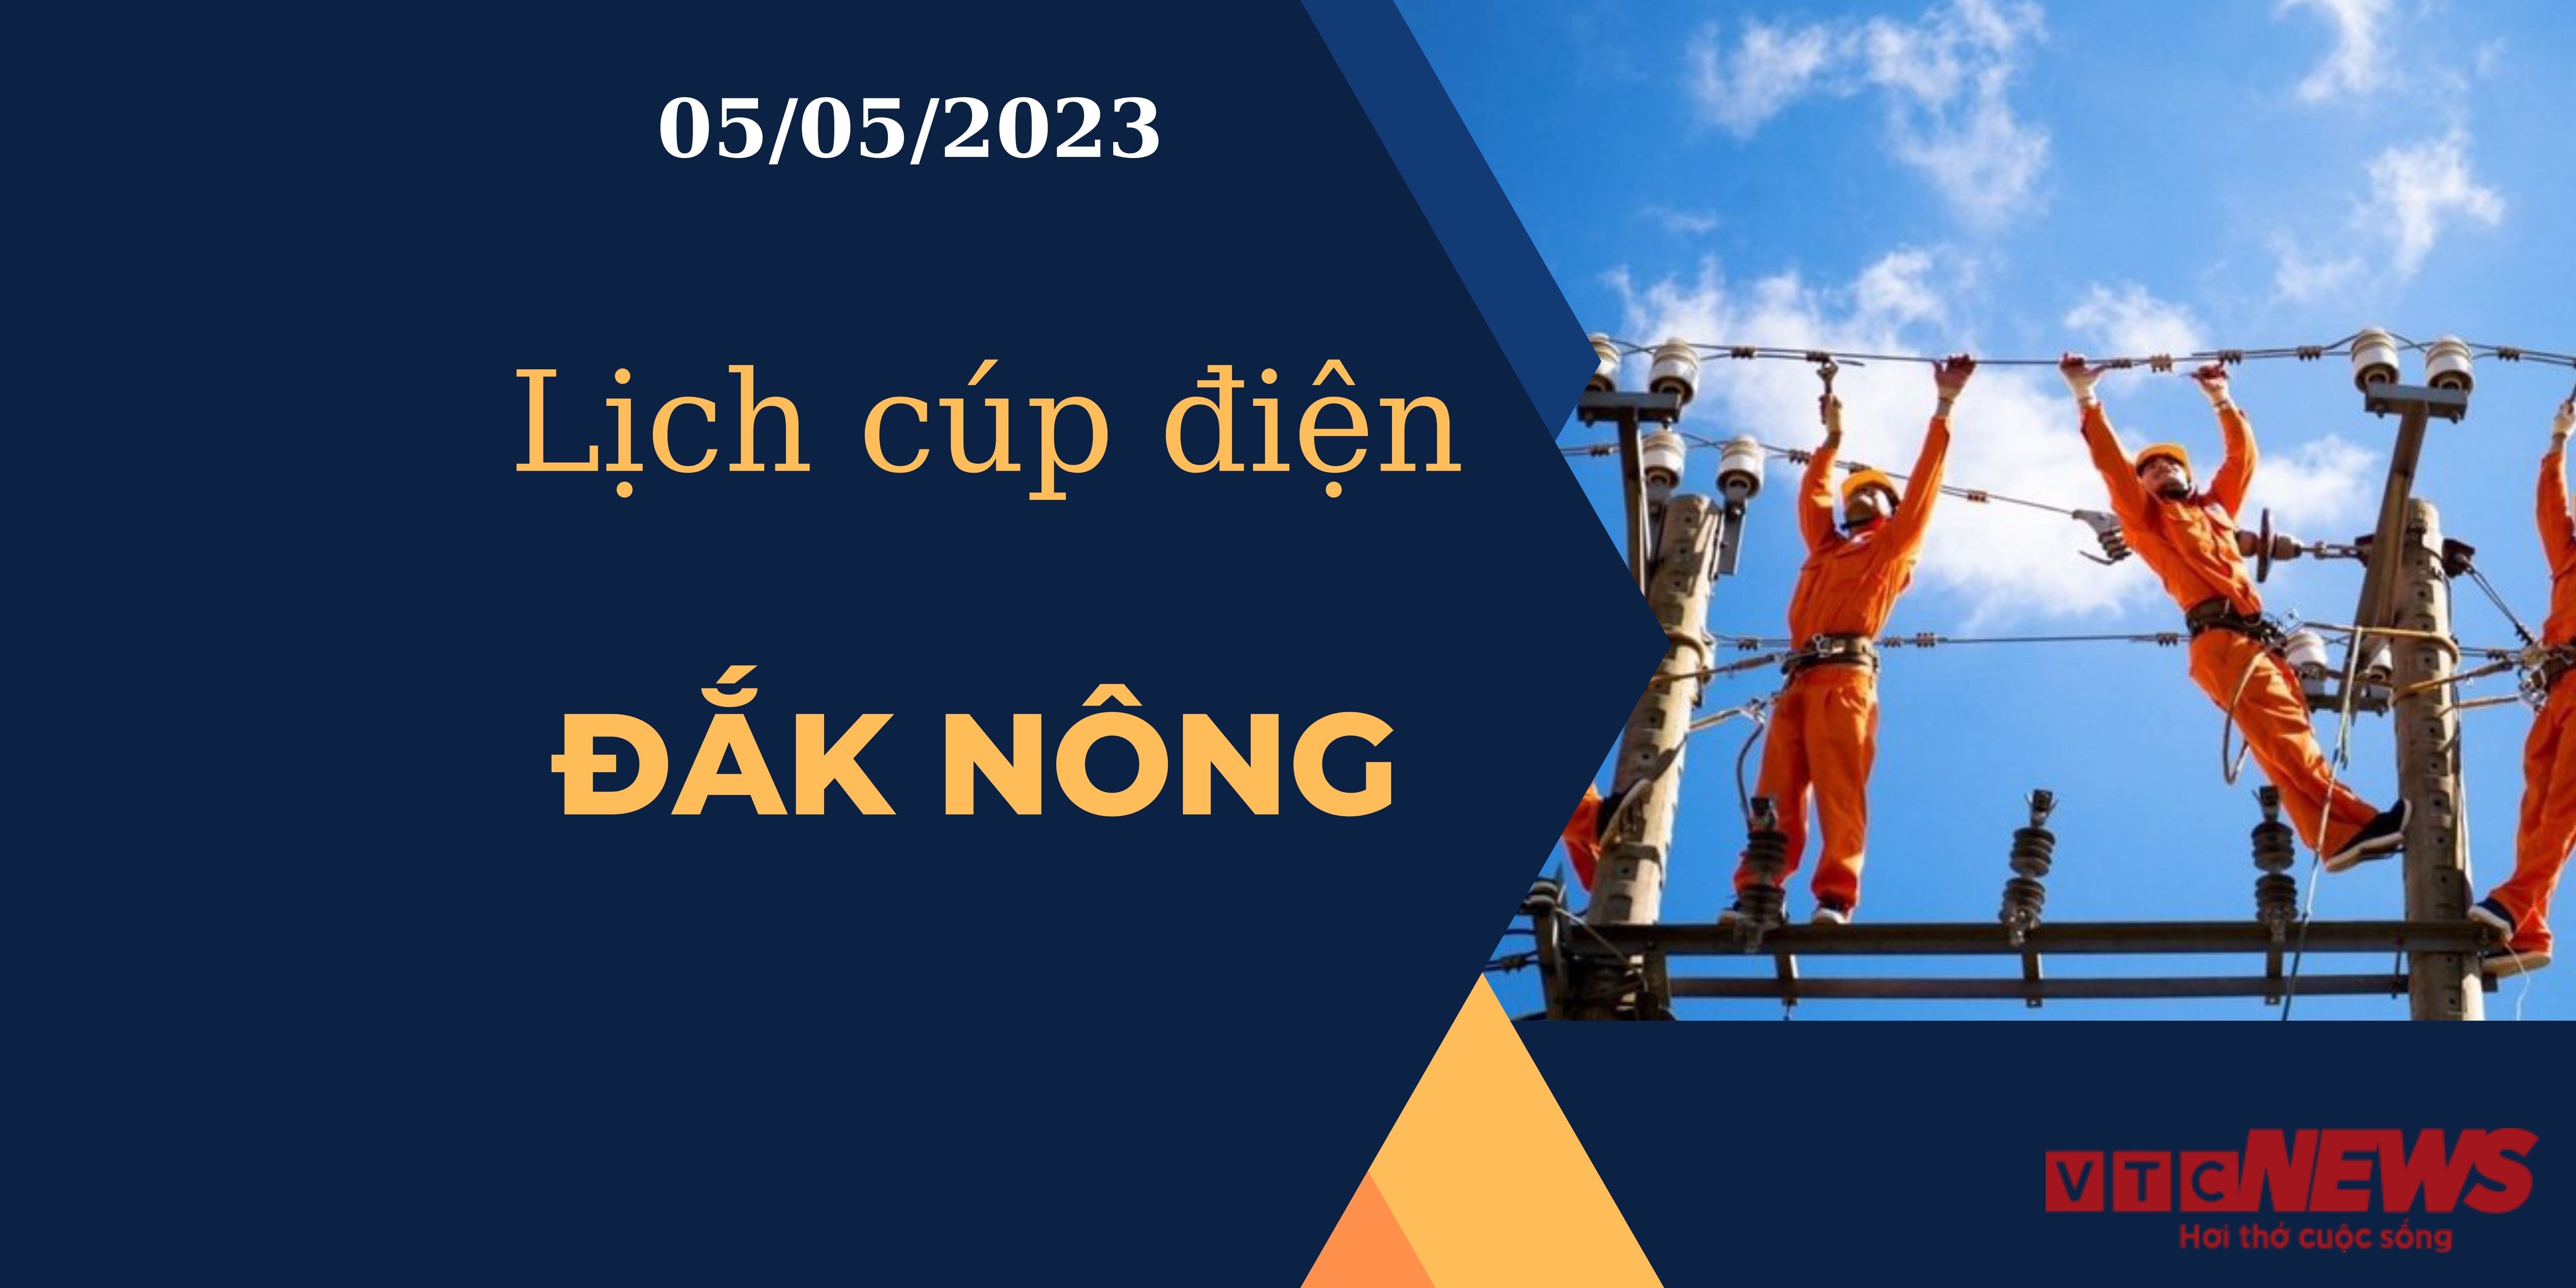 Lịch cúp điện hôm nay tại  Đắk Nông ngày 05/05/2023 - 1